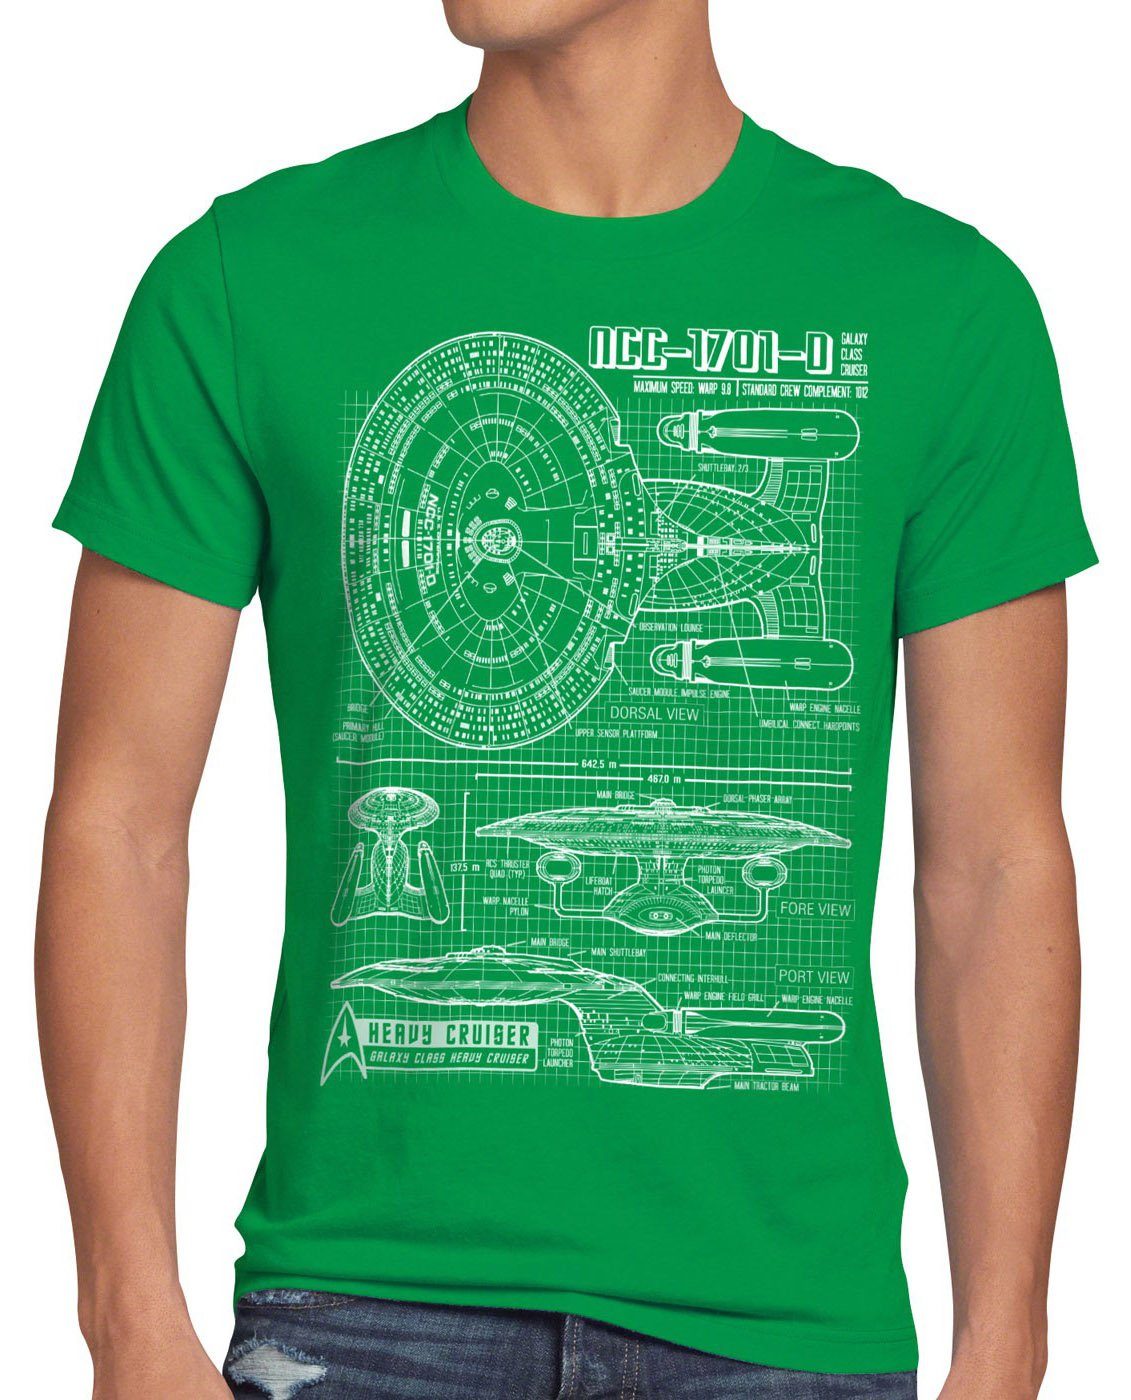 style3 Print-Shirt Herren T-Shirt NC-1701D Enterprise Blaupause trek trekkie star jean luc picard grün